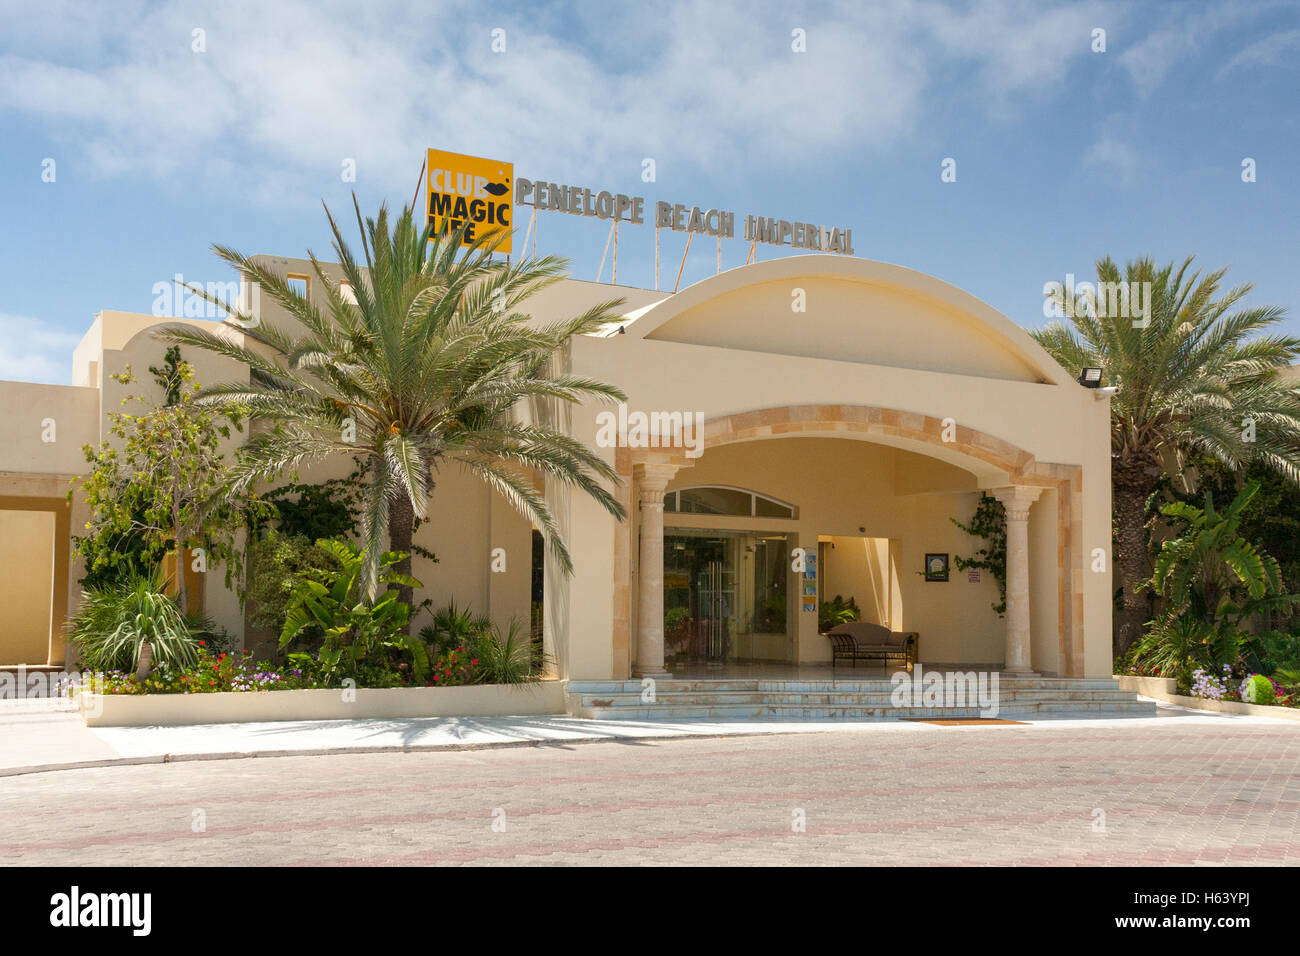 L'entrée de l'hôtel Penelope Beach Imperial à Djerba, Tunisie Banque D'Images